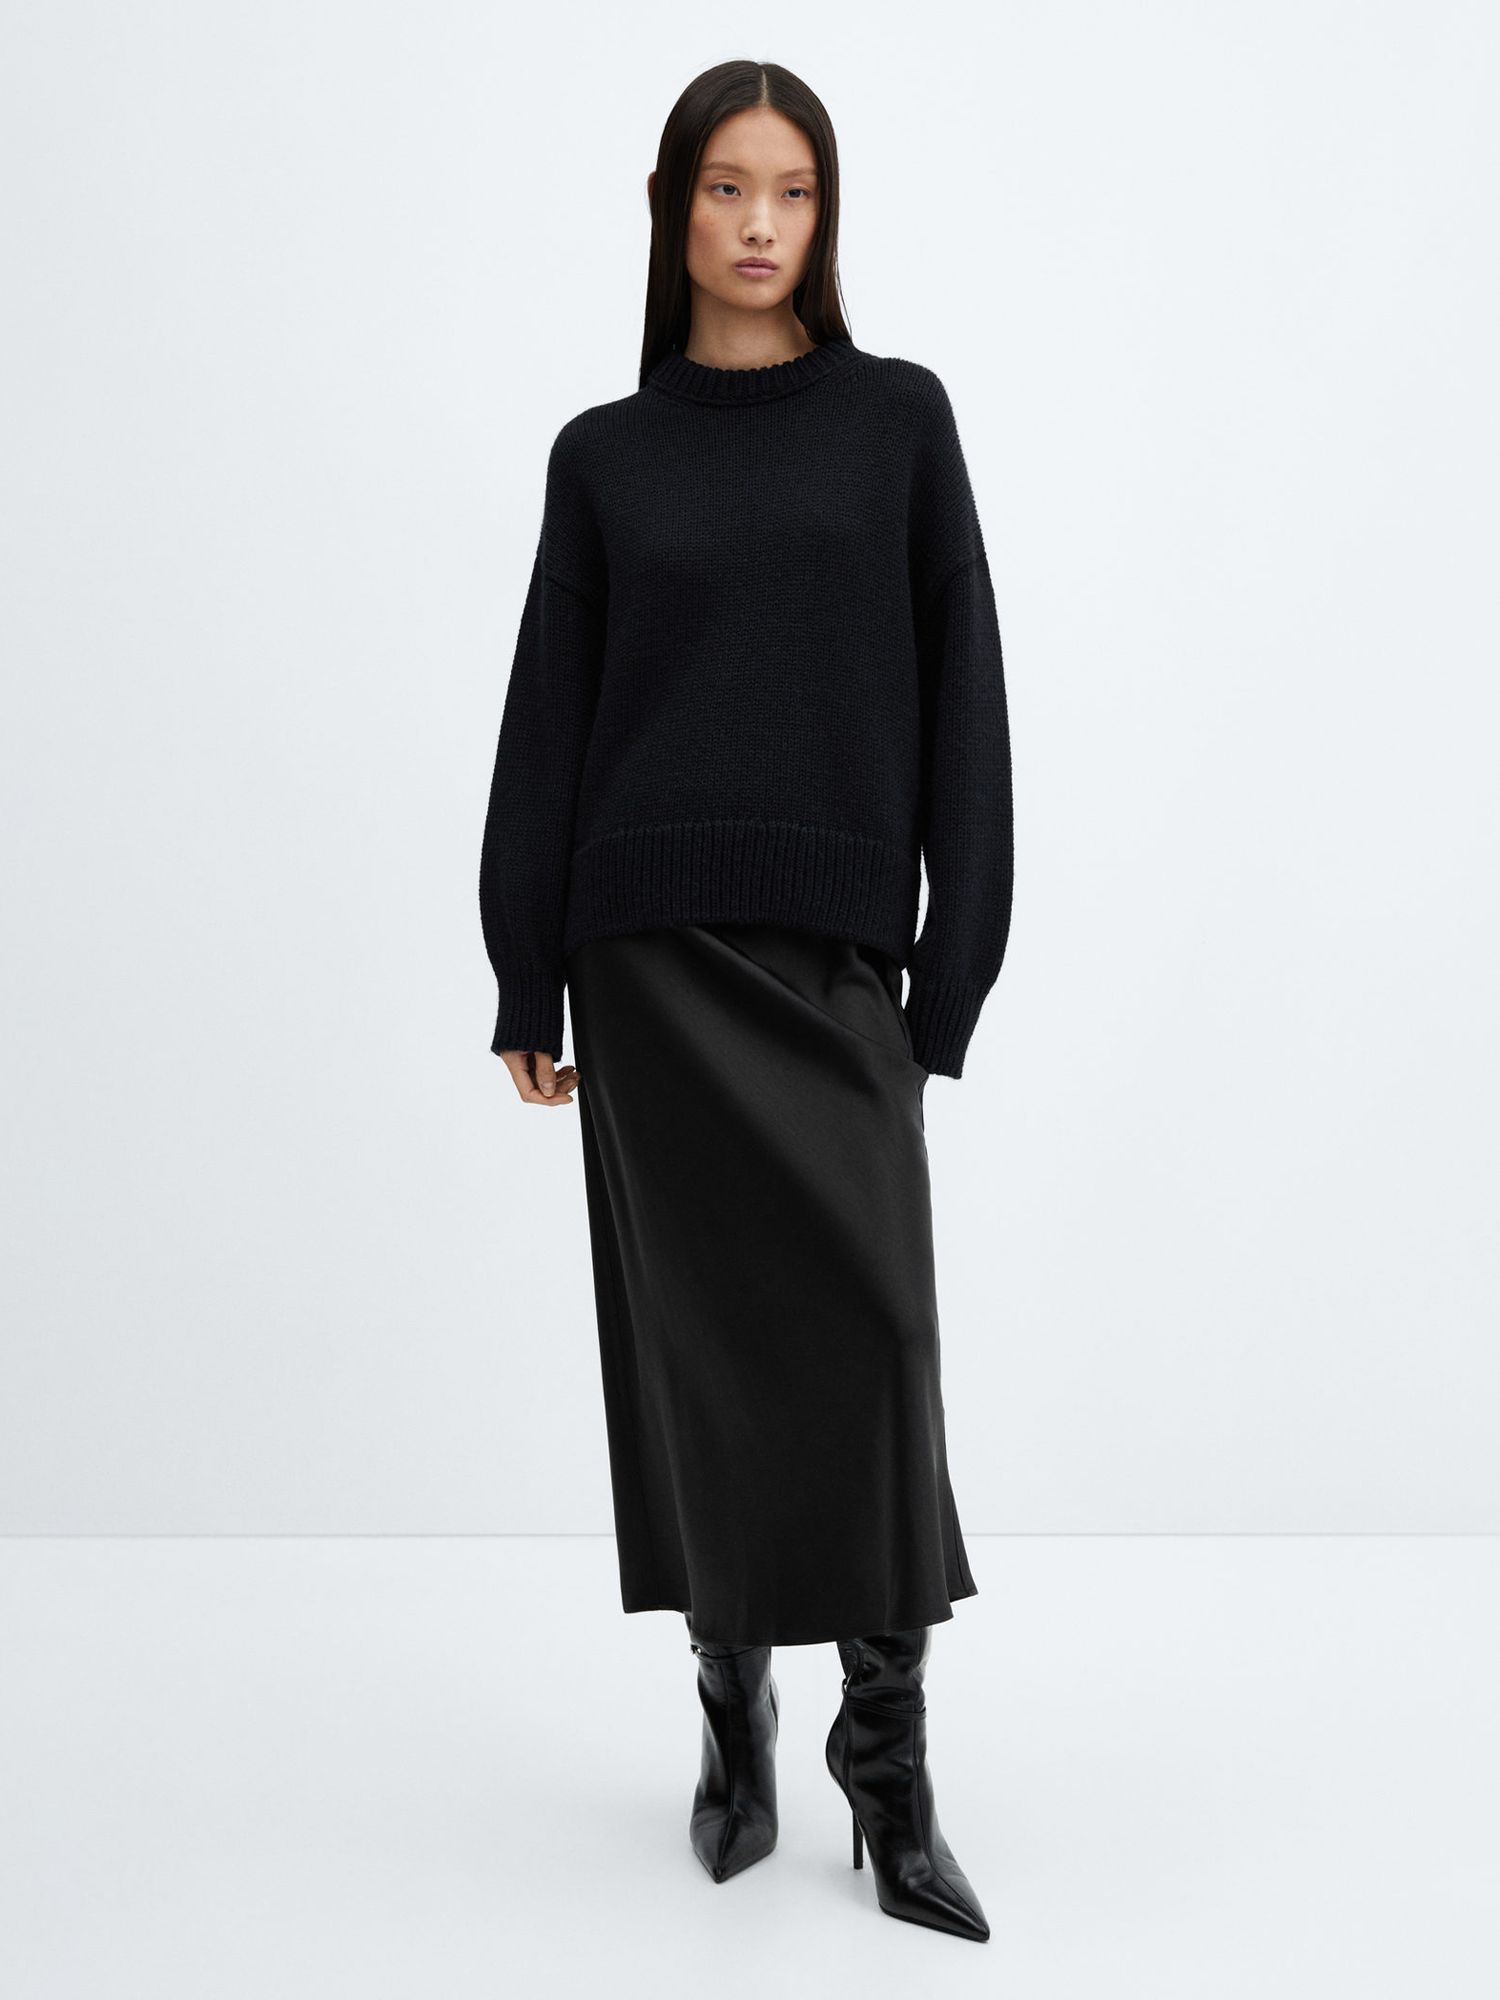 Mango Mia Satin Slip Midi Skirt, Black, XS